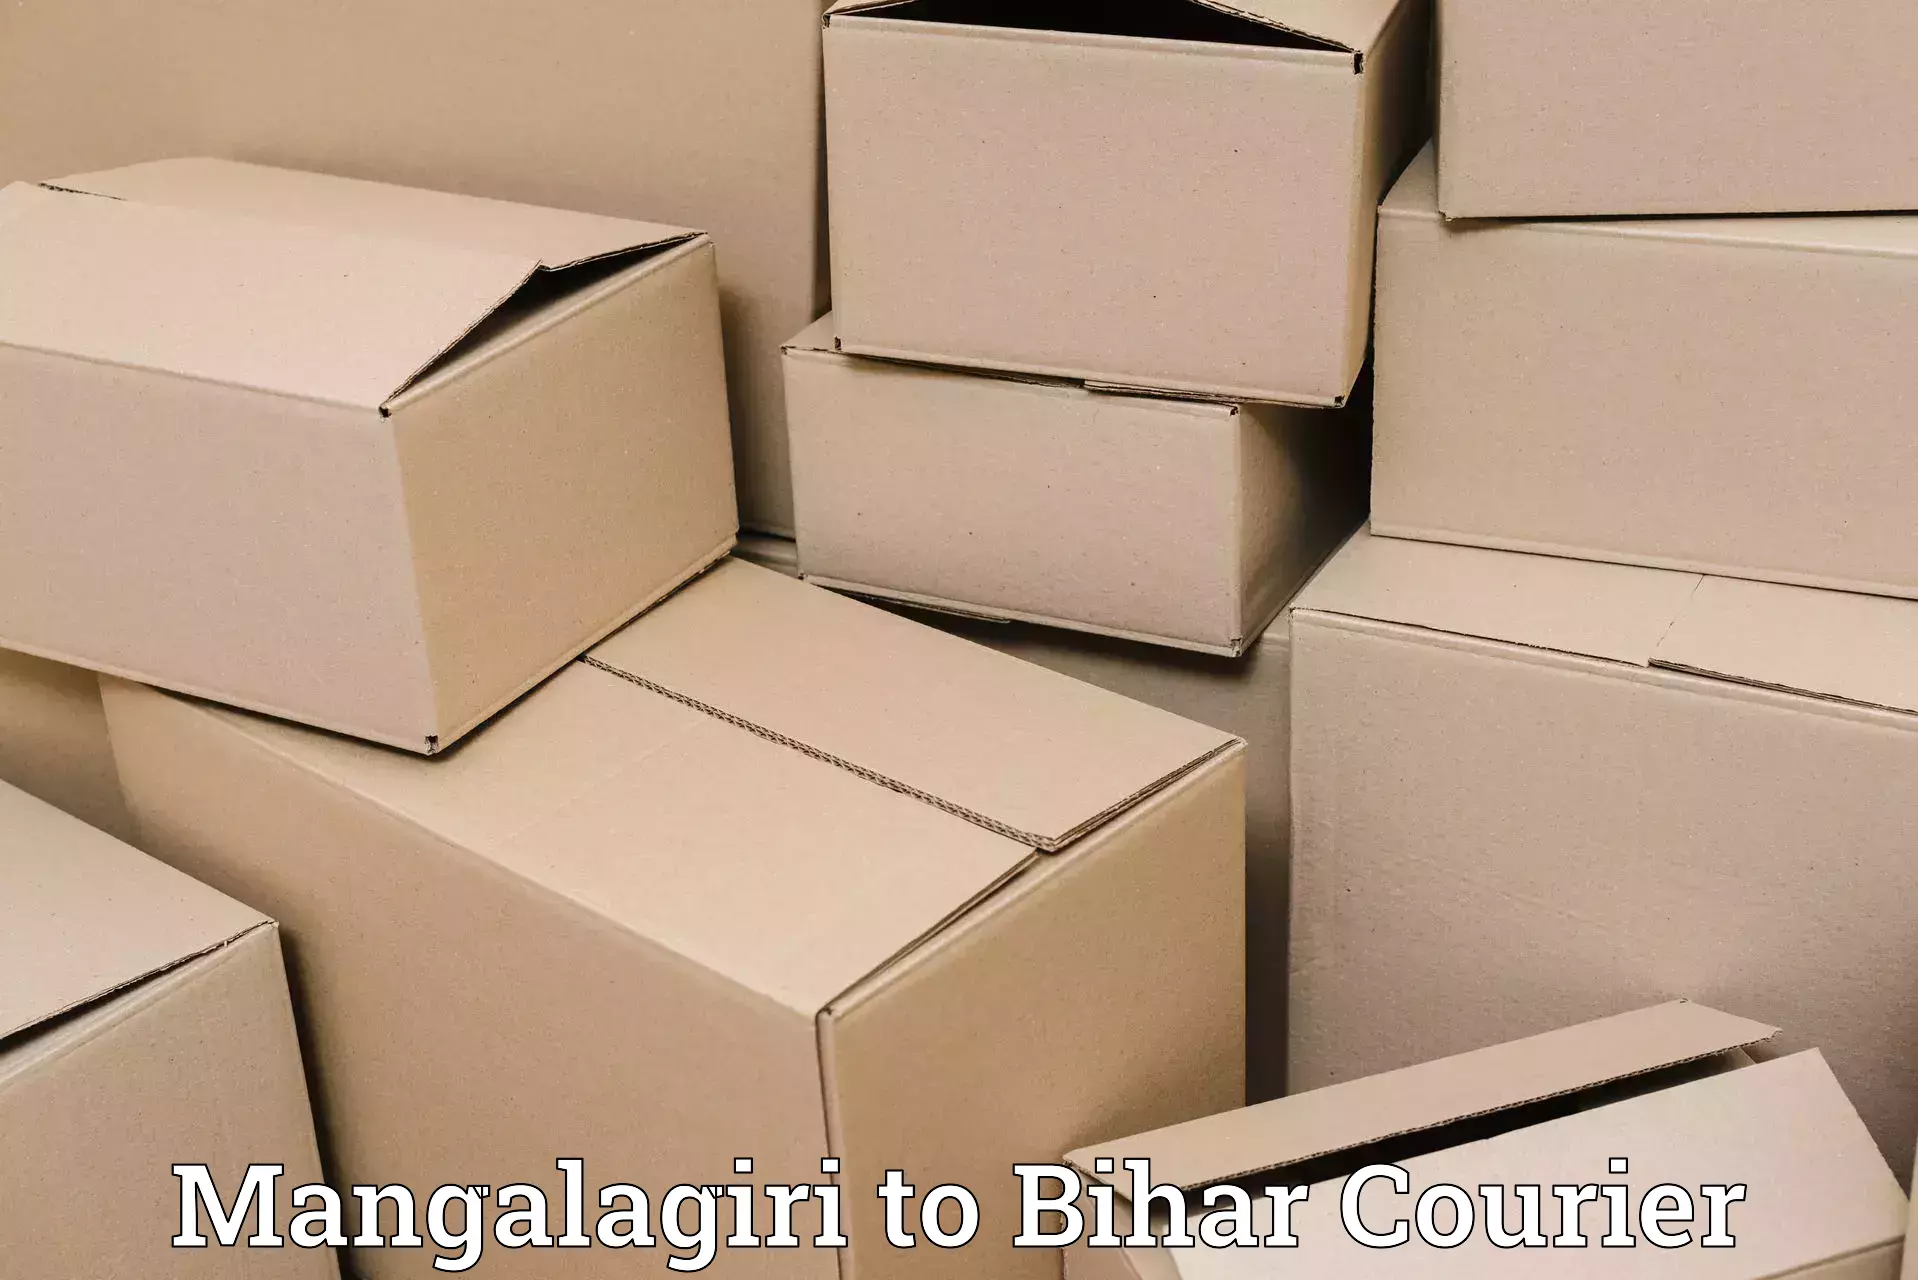 Urgent courier needs Mangalagiri to Lalganj Vaishali